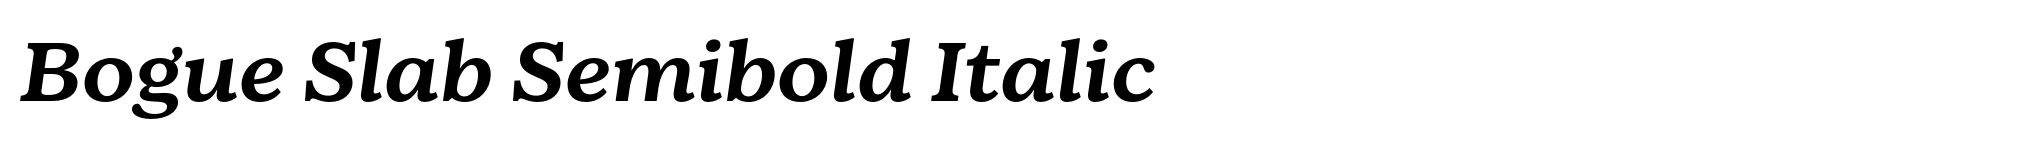 Bogue Slab Semibold Italic image